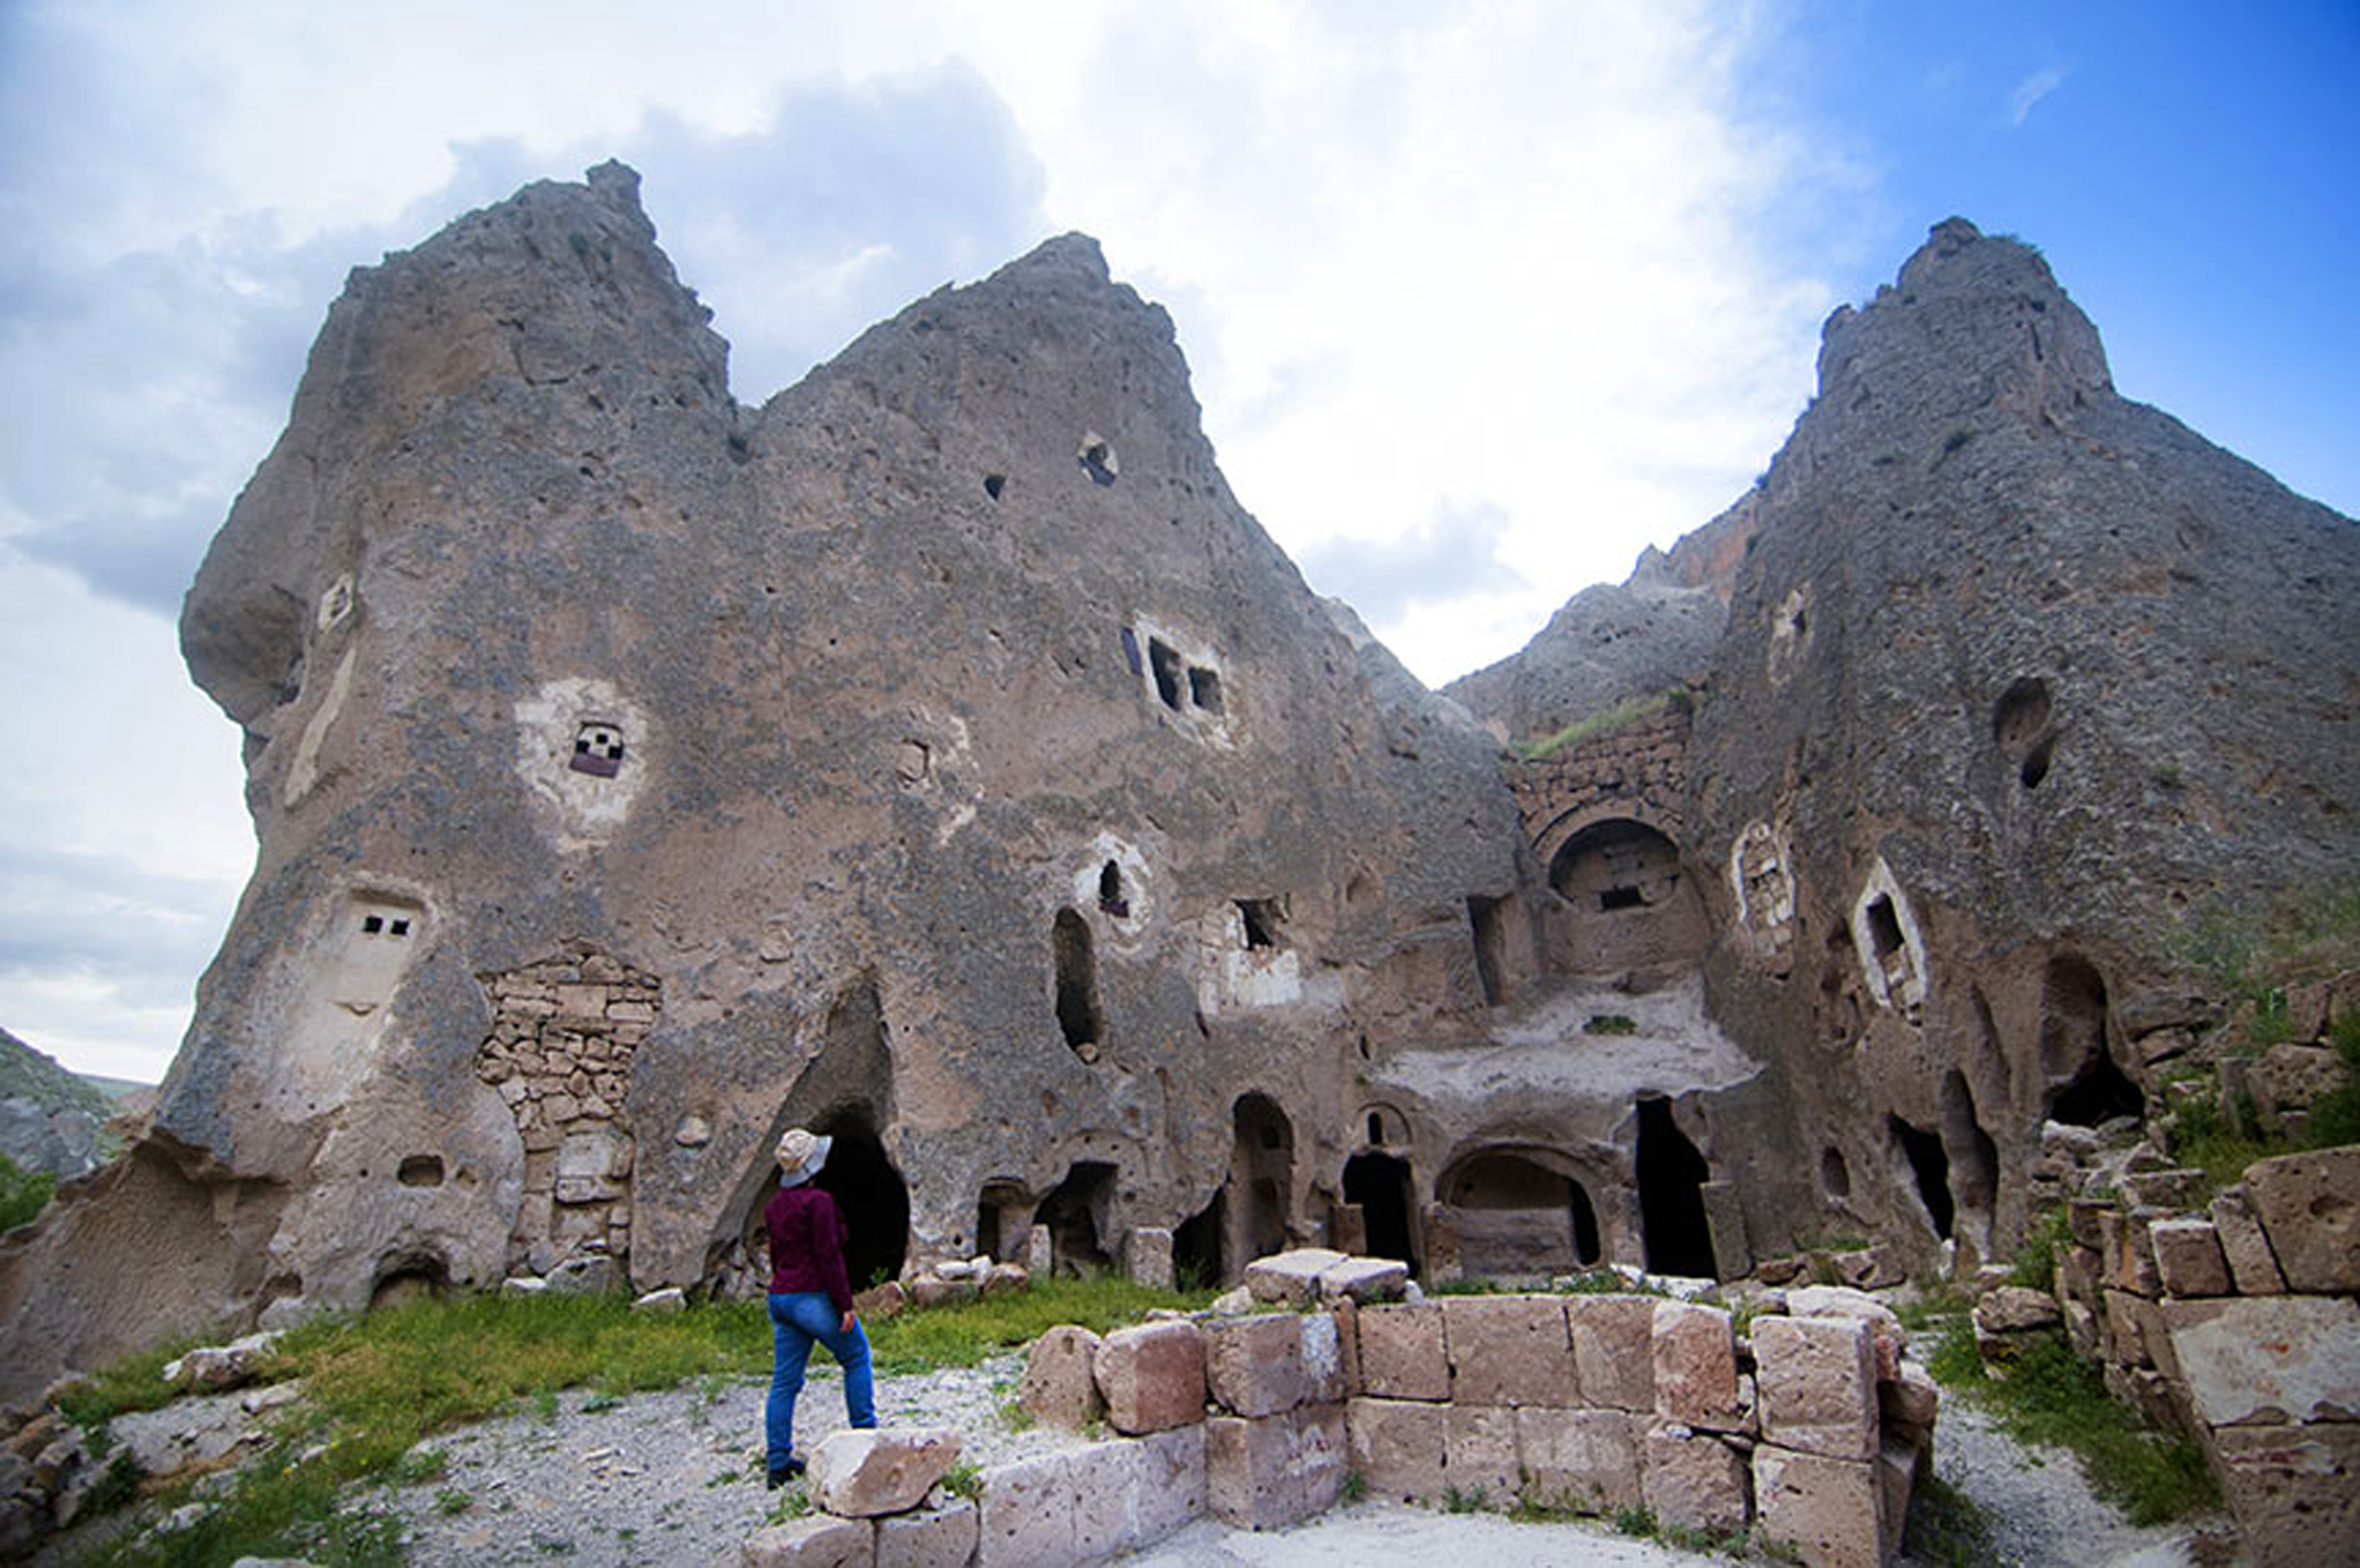 Rock-hewn caves near Goreme, Turkey (photo: Sugato Mukherjee)